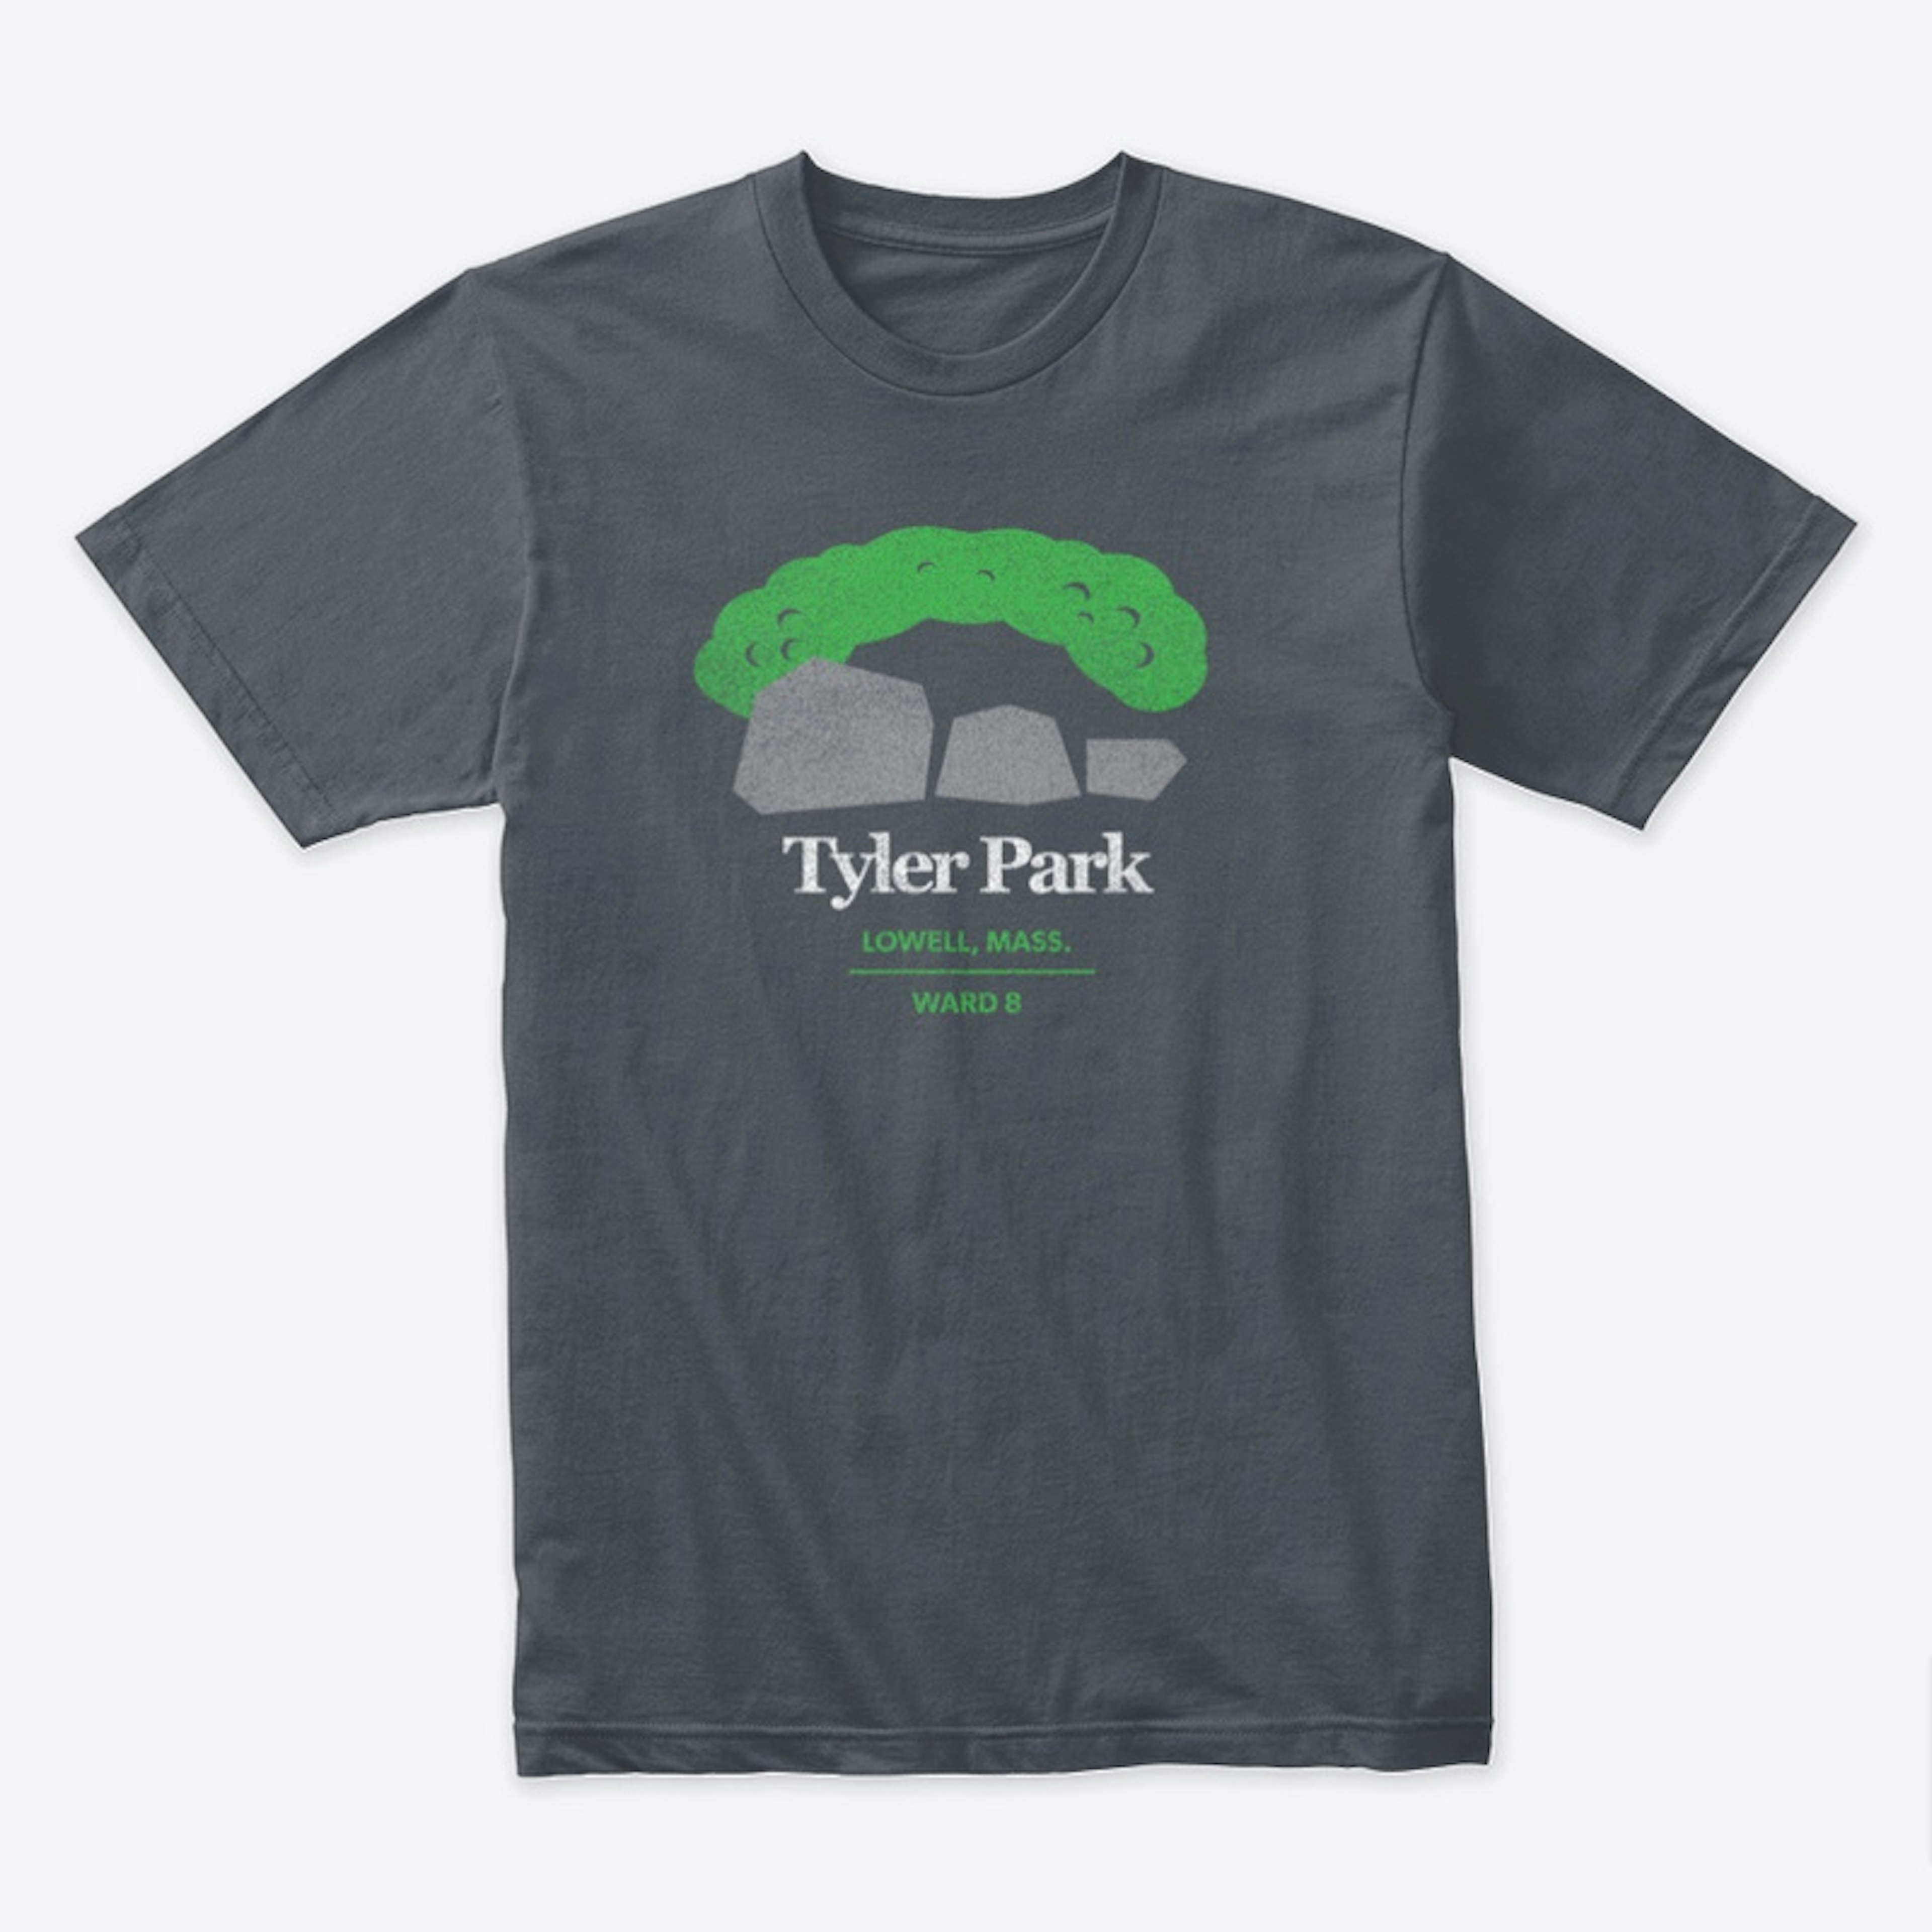 Tyler Park Tee